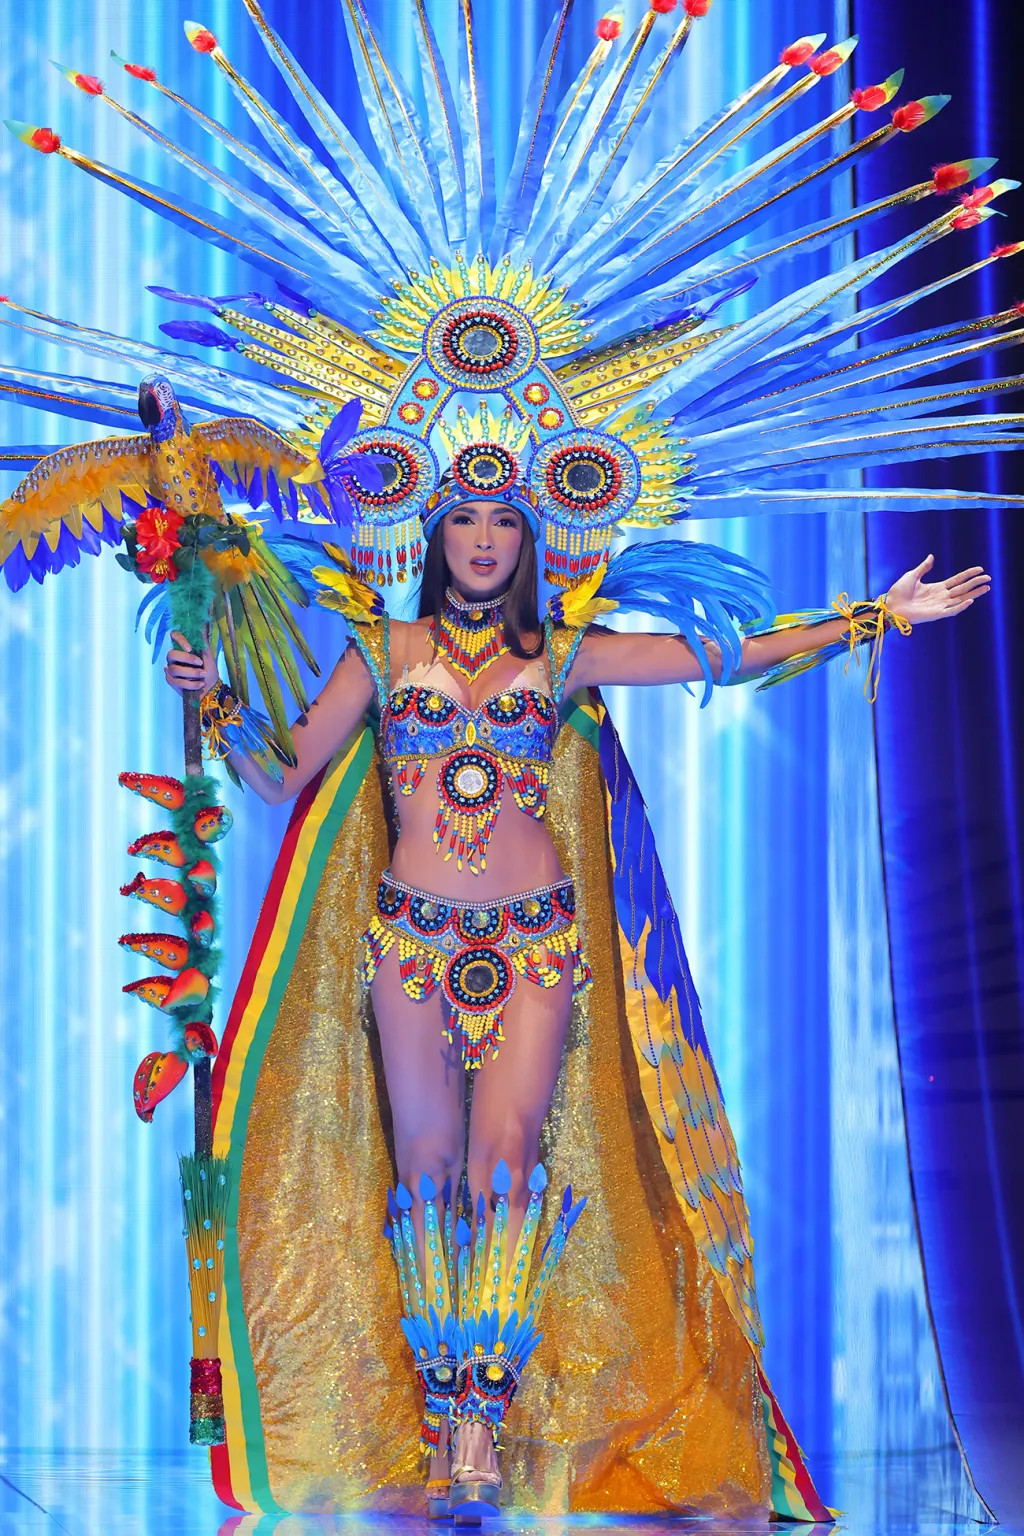 Hoa hậu Bolivia Estefany Rivero tại buổi trình diễn trang phục dân tộc Hoa hậu Hoàn vũ lần thứ 72 vào ngày 16/11 tại El Salvador.